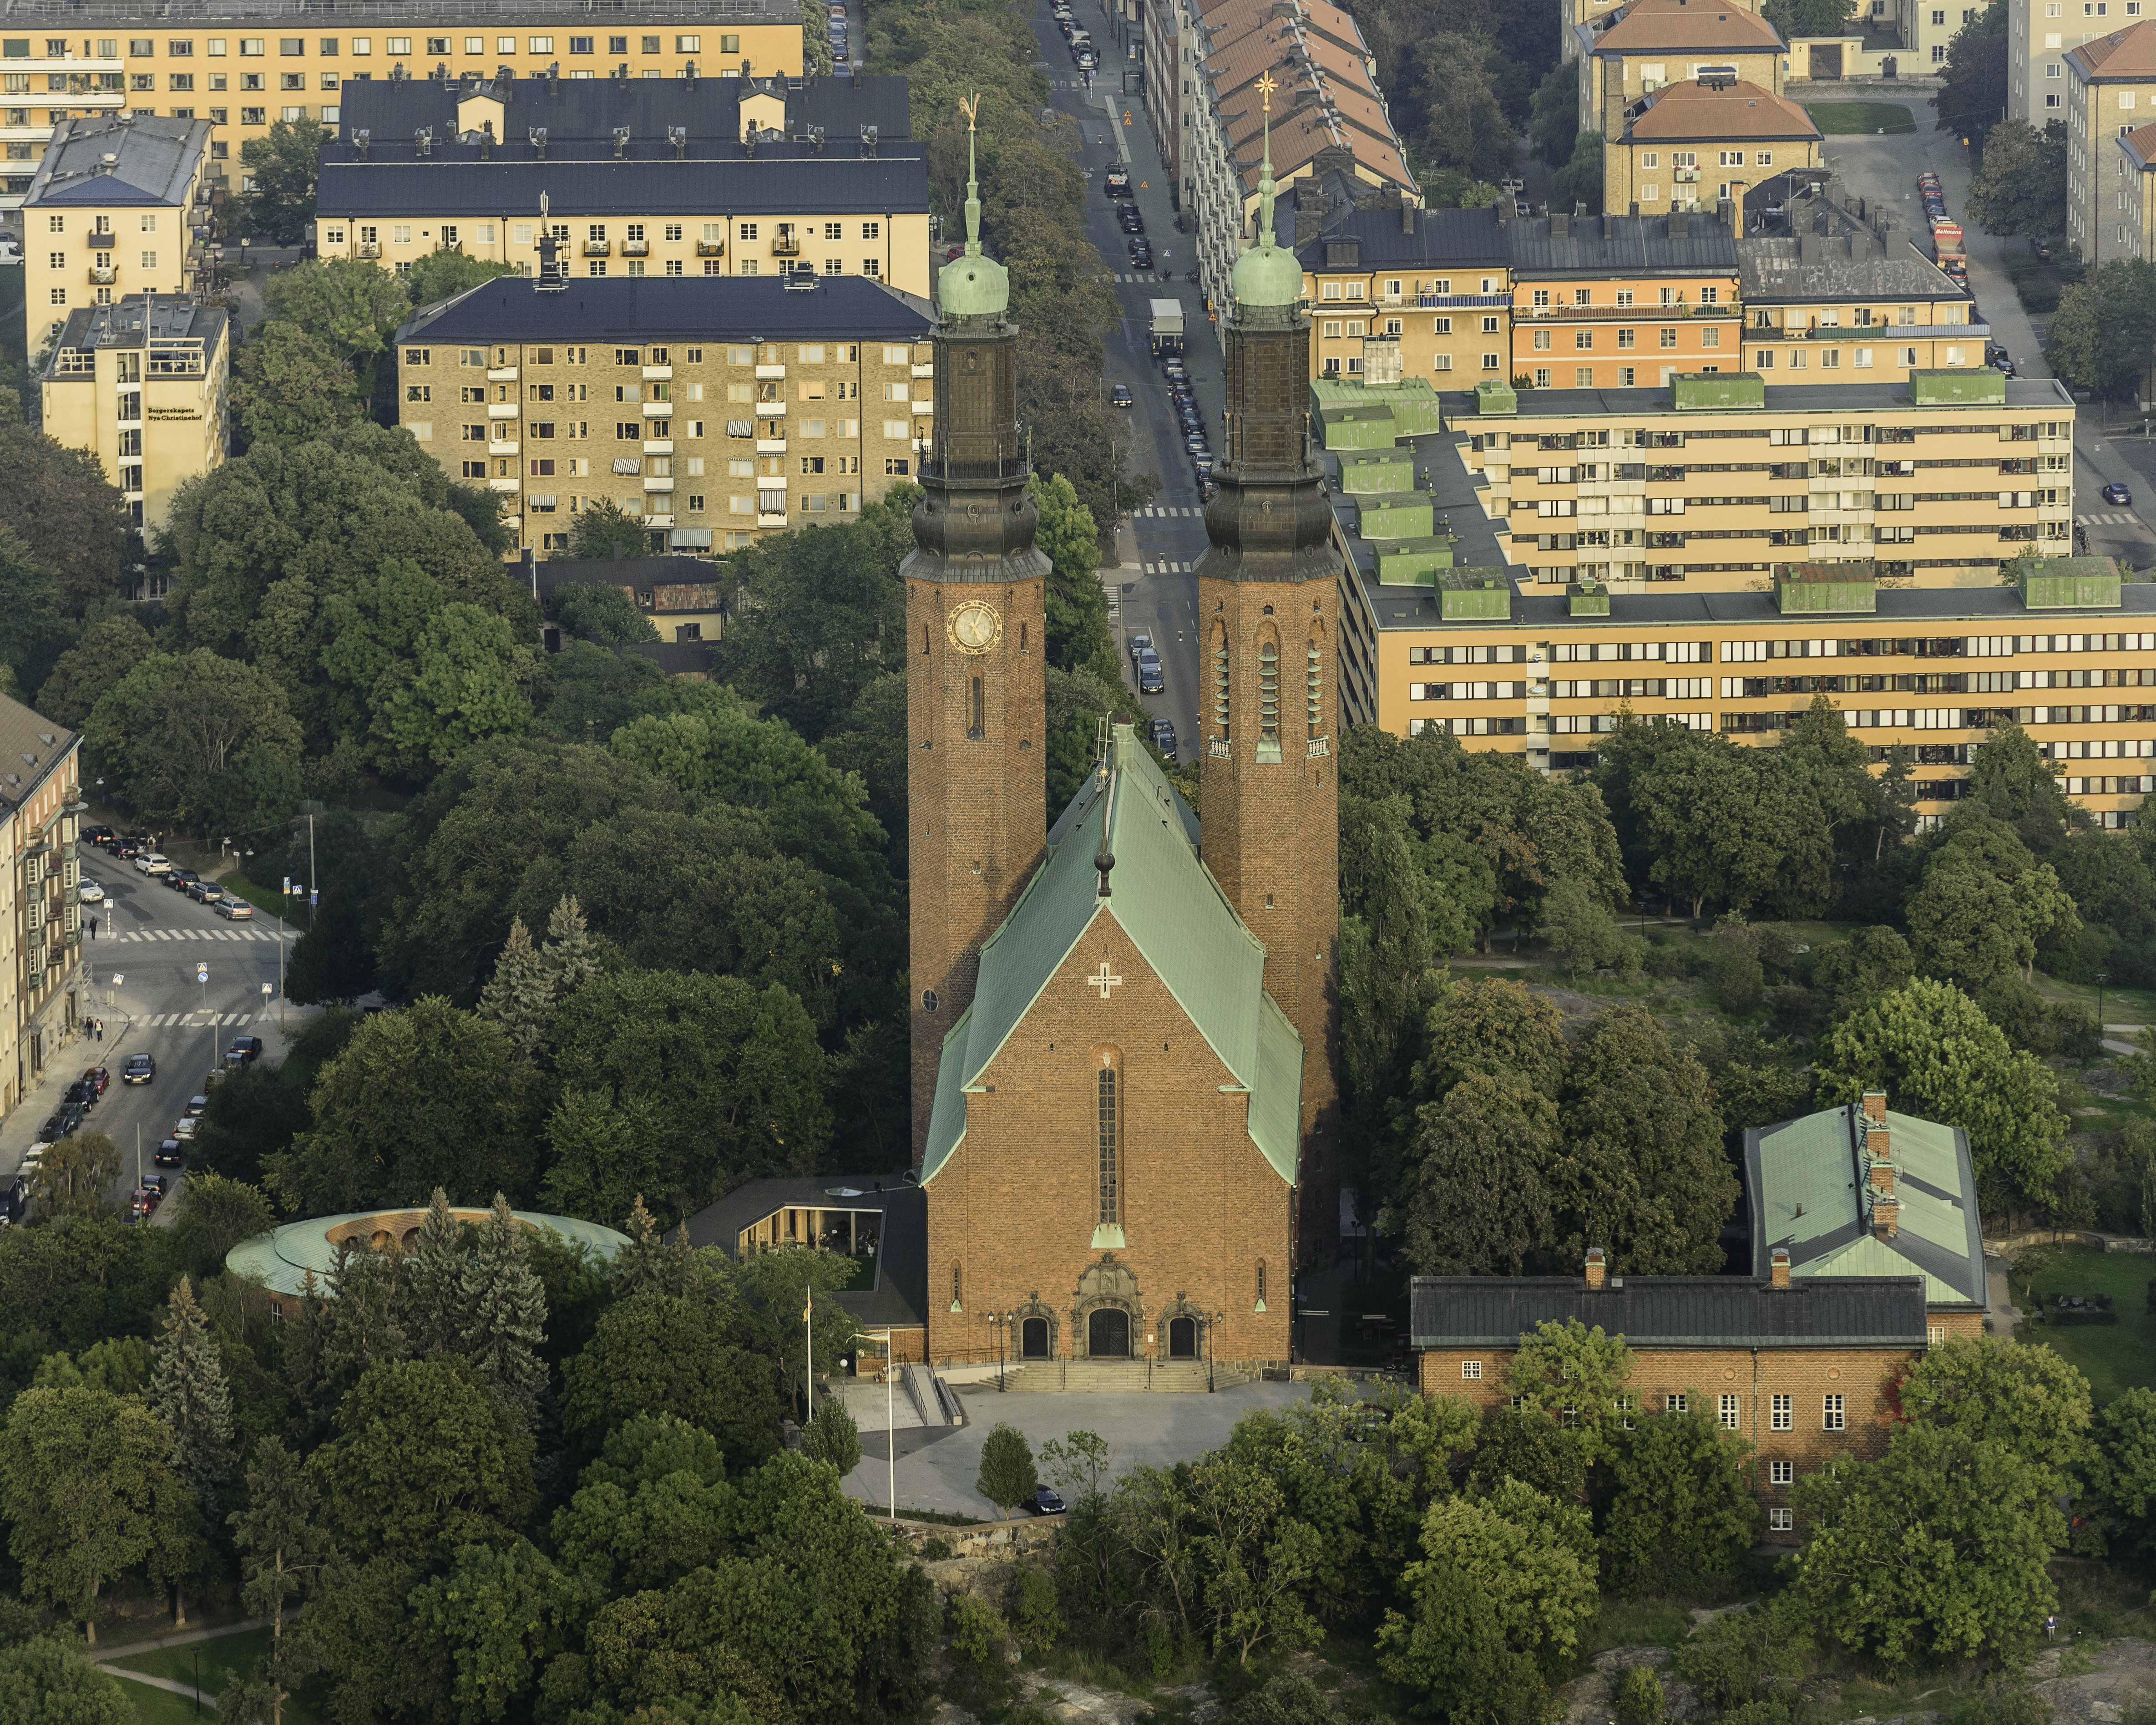 Högalidskyrkan September 2014 02